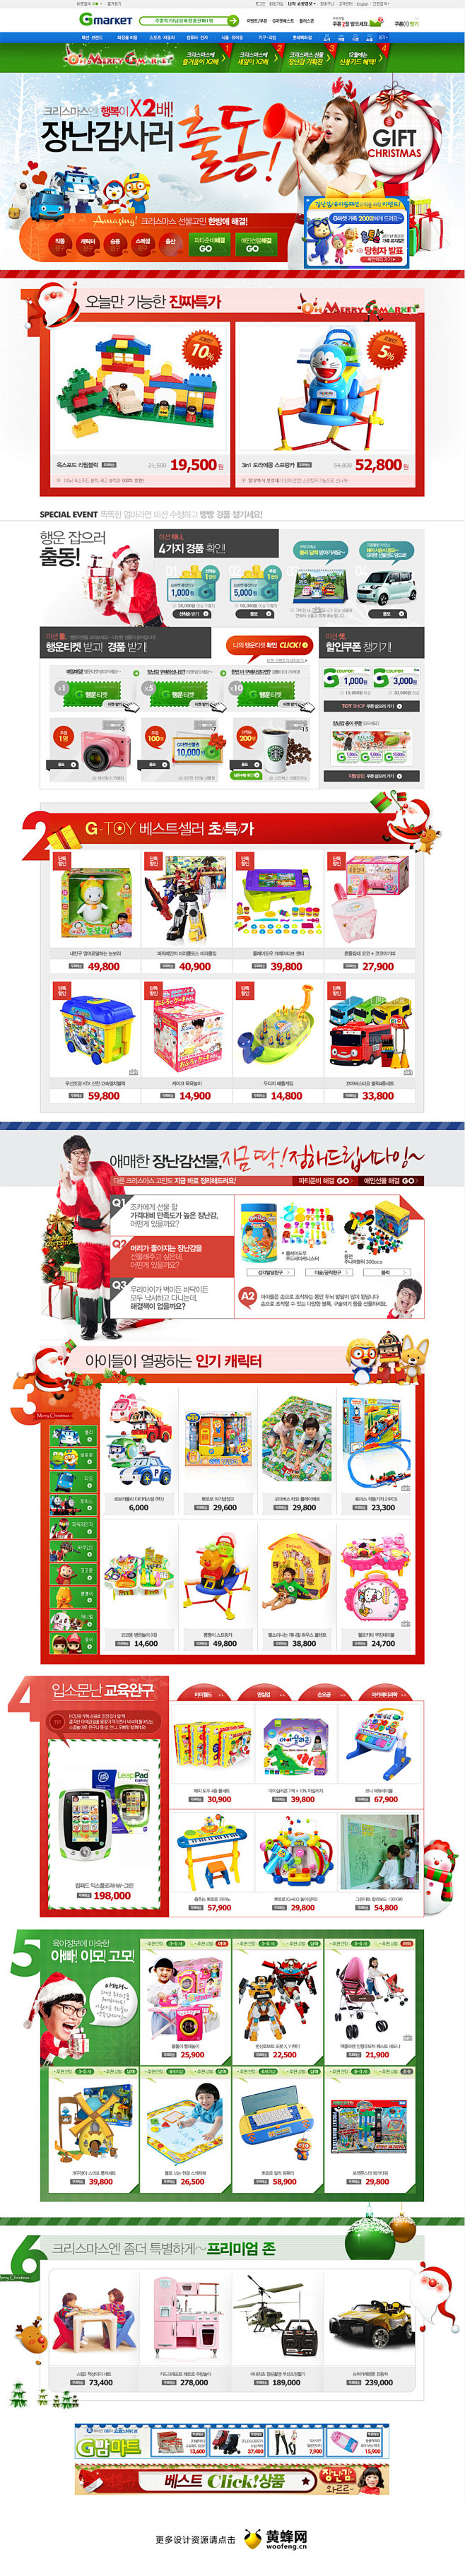 Gmarket圣诞节活动专题页面设计 -...